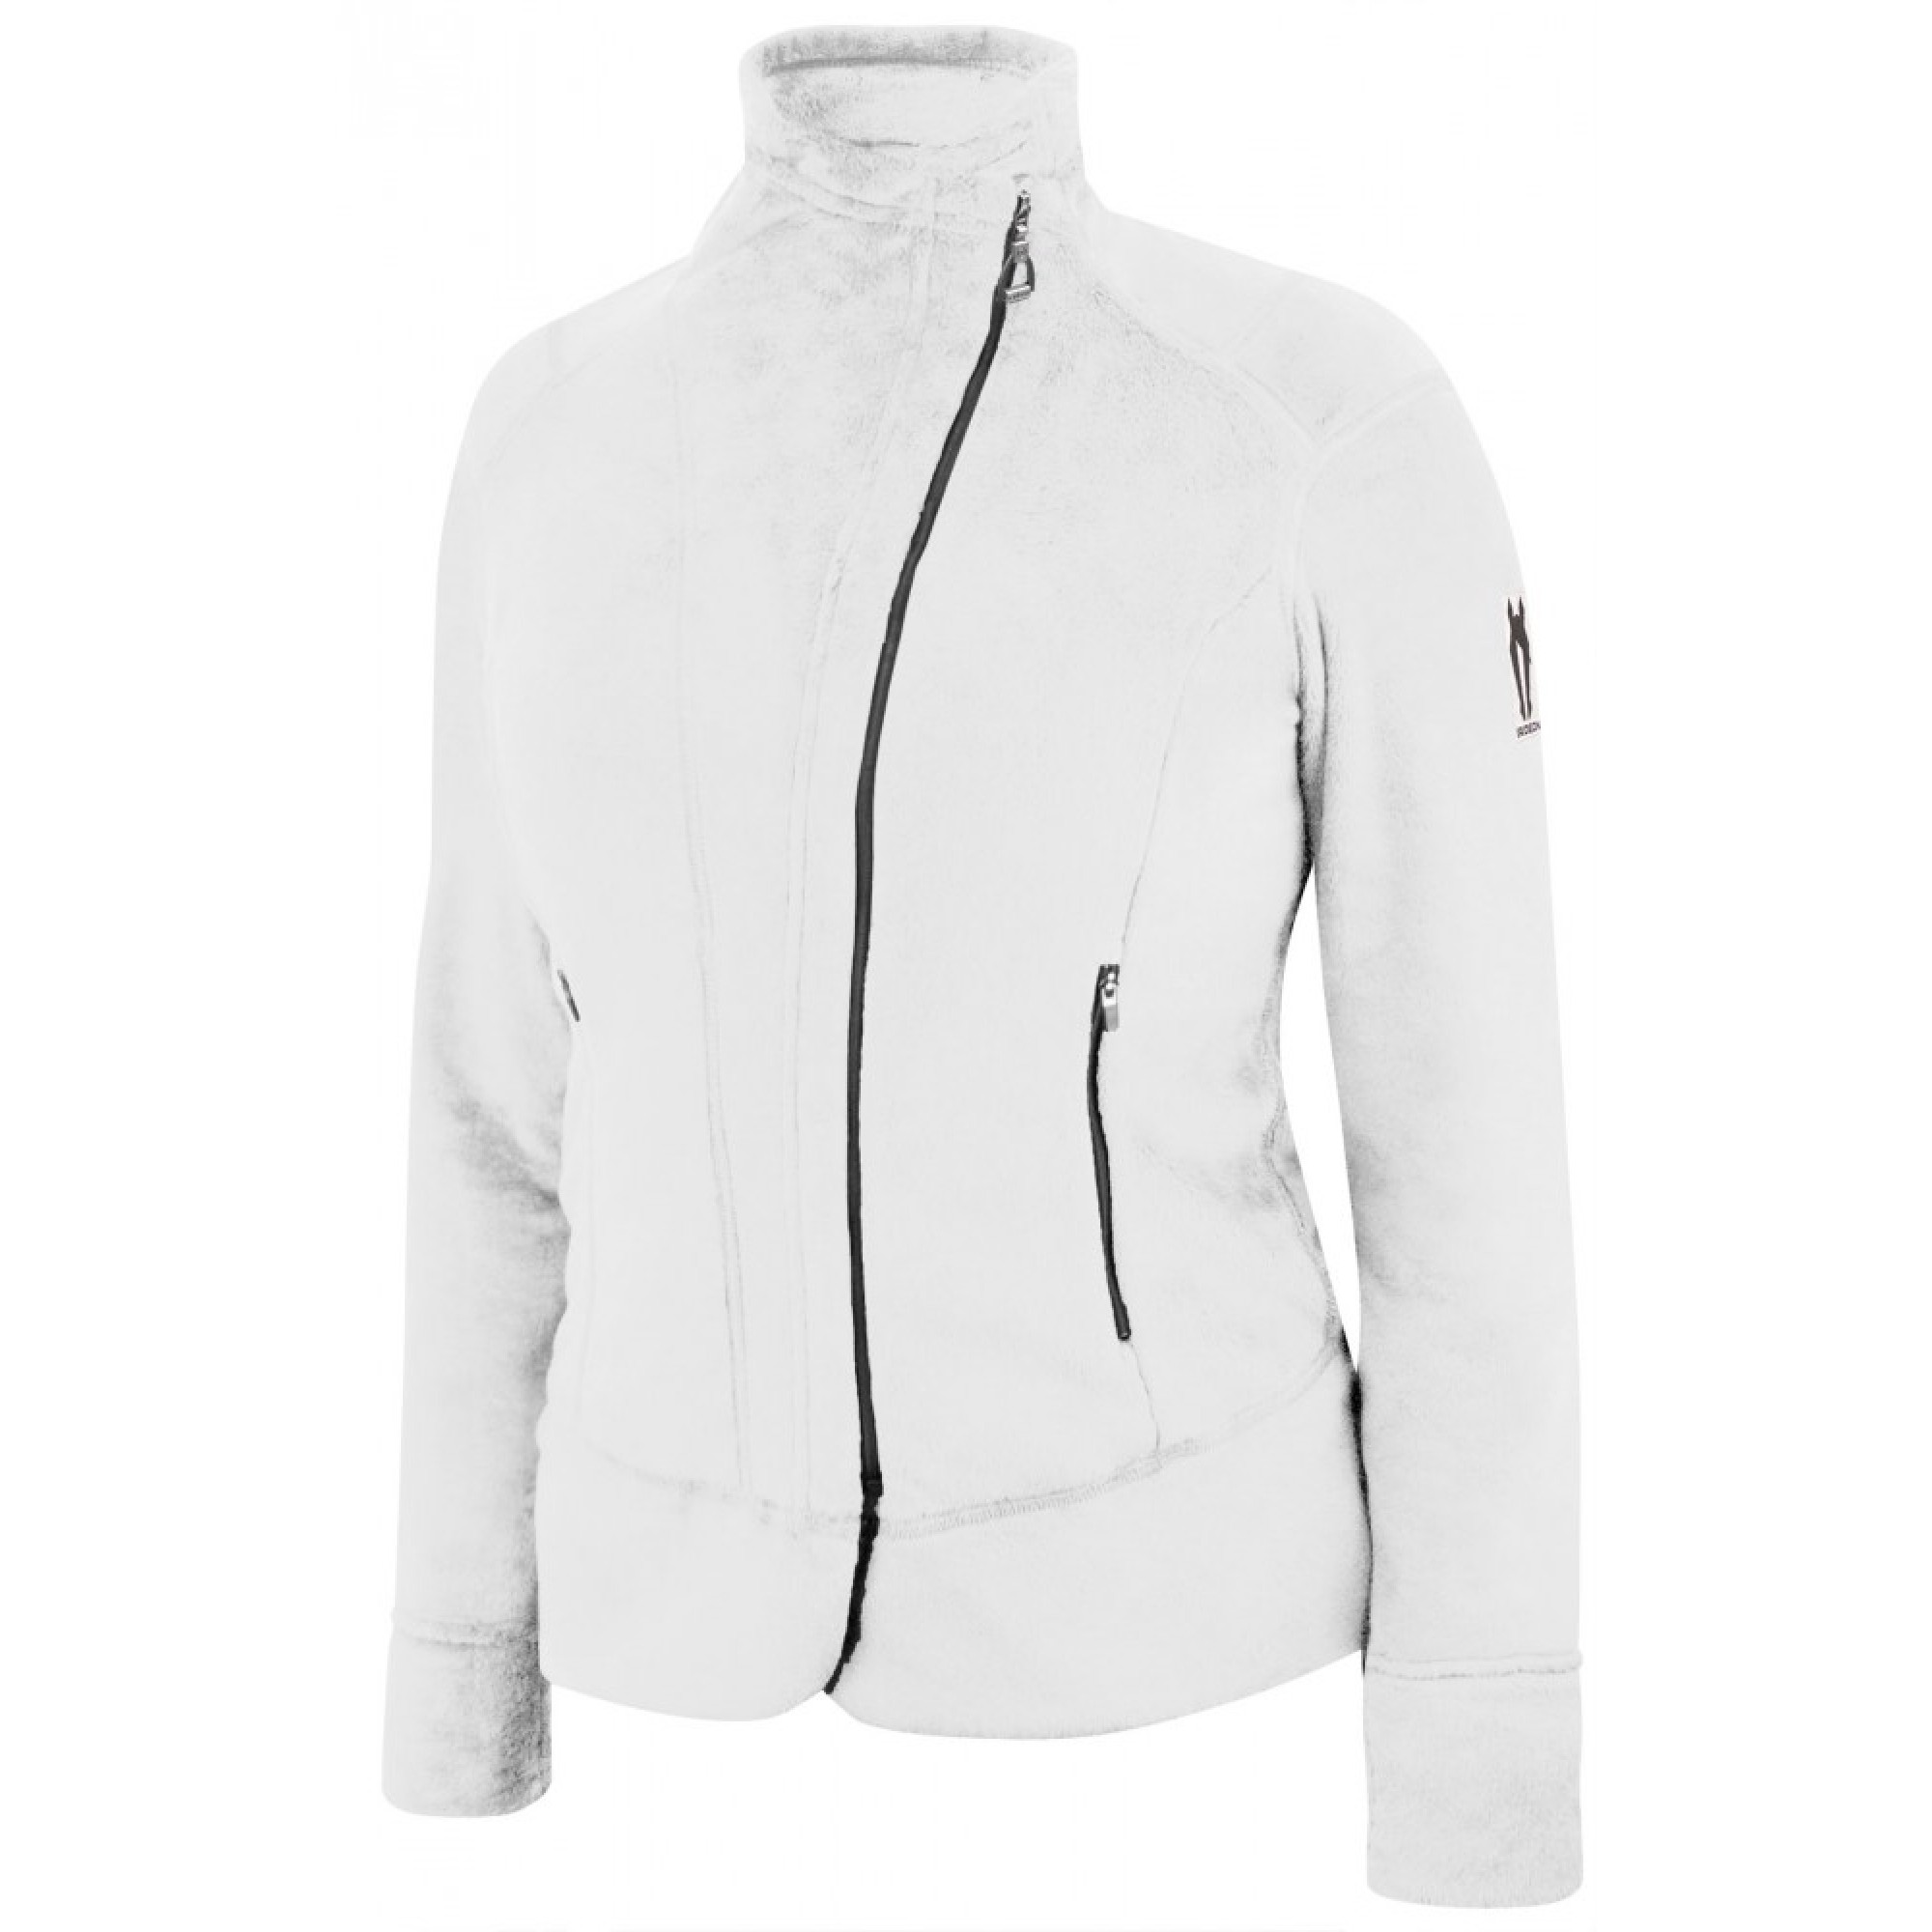 IRIDEON® Iceland fleece jacket